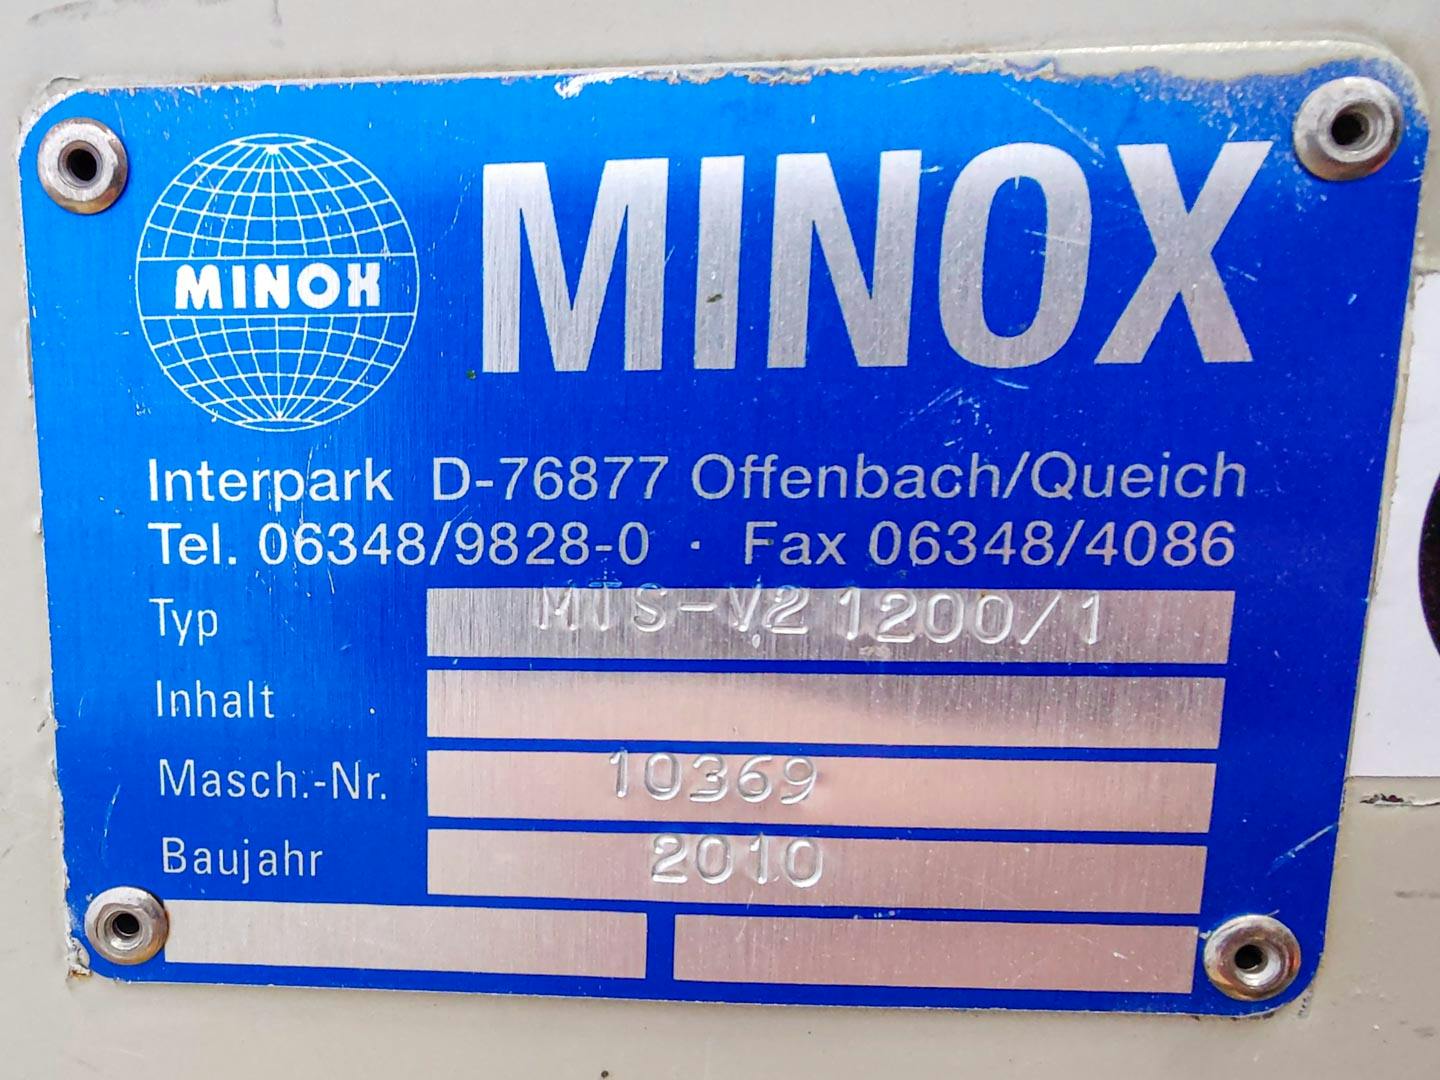 Minox MTS-V2 1200/1 - Peneira vibratória - image 10